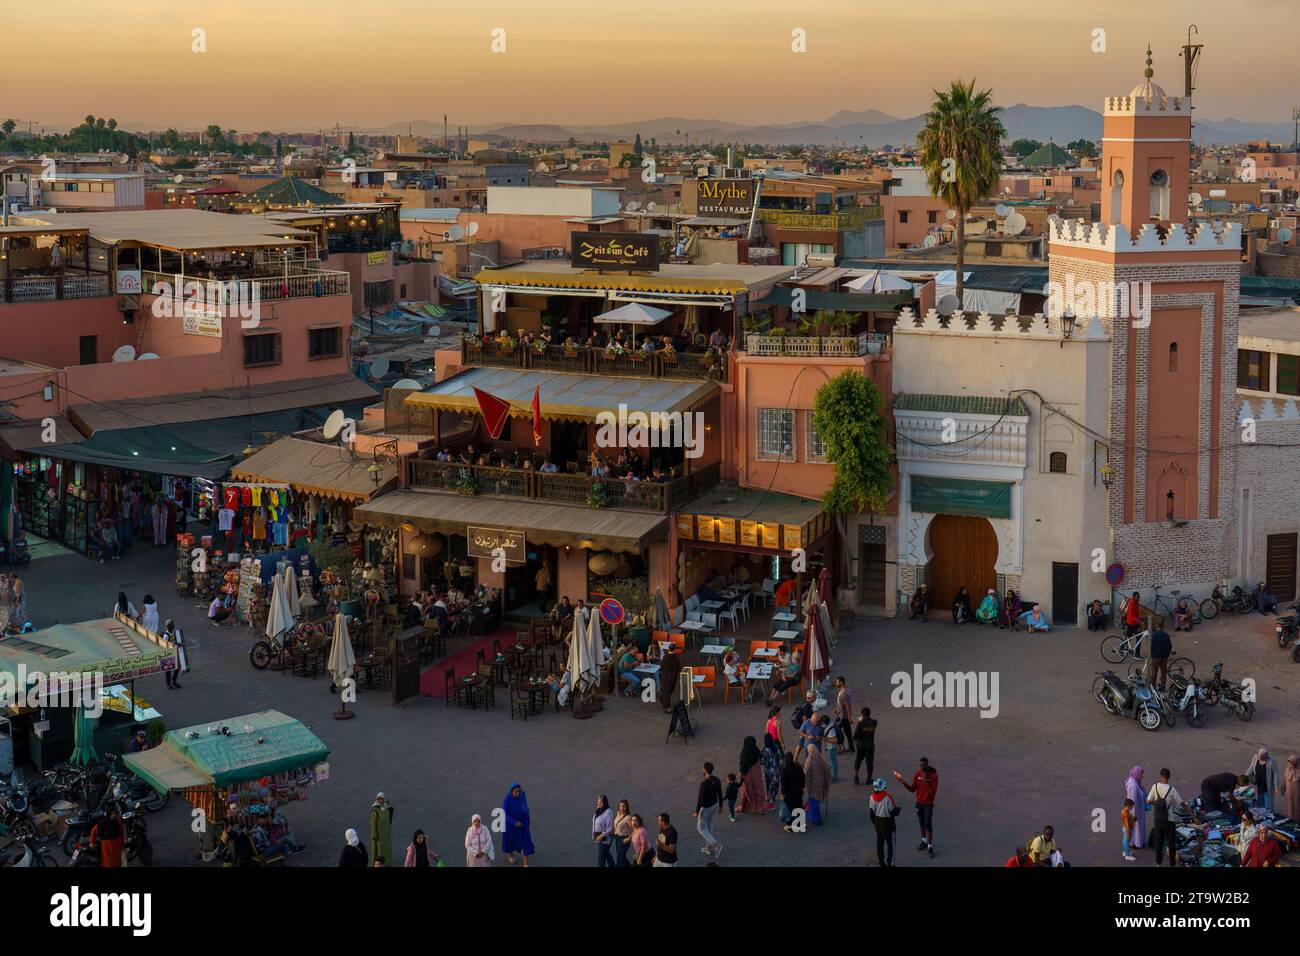 Afrique du Nord. Maroc. Marrakech. Zeitoun café à la place Jemaa el fna au coucher du soleil Banque D'Images